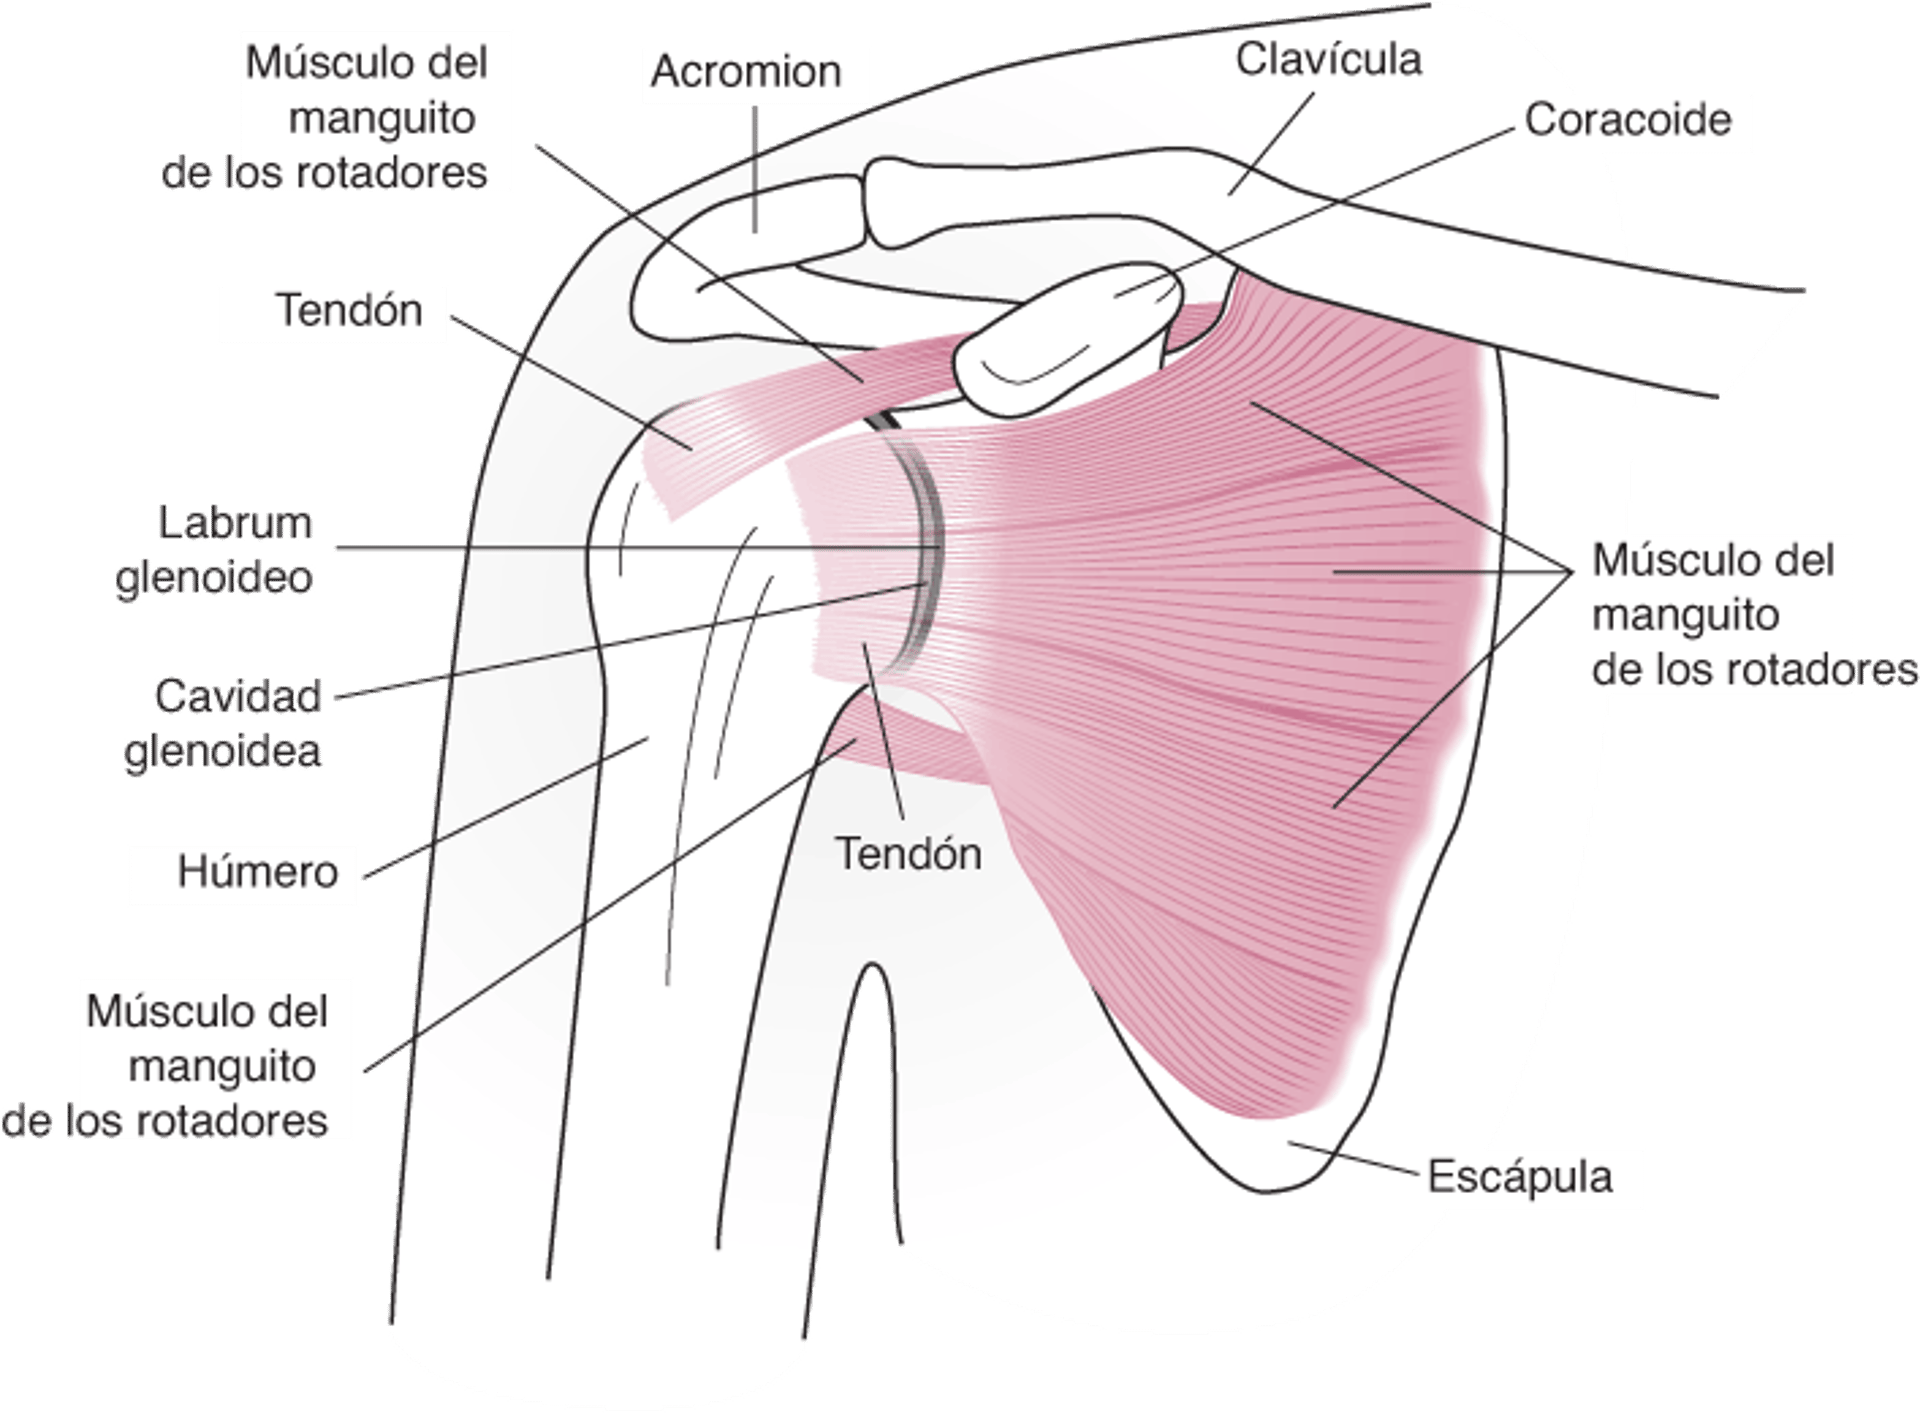 Anatomía de la articulación del hombro